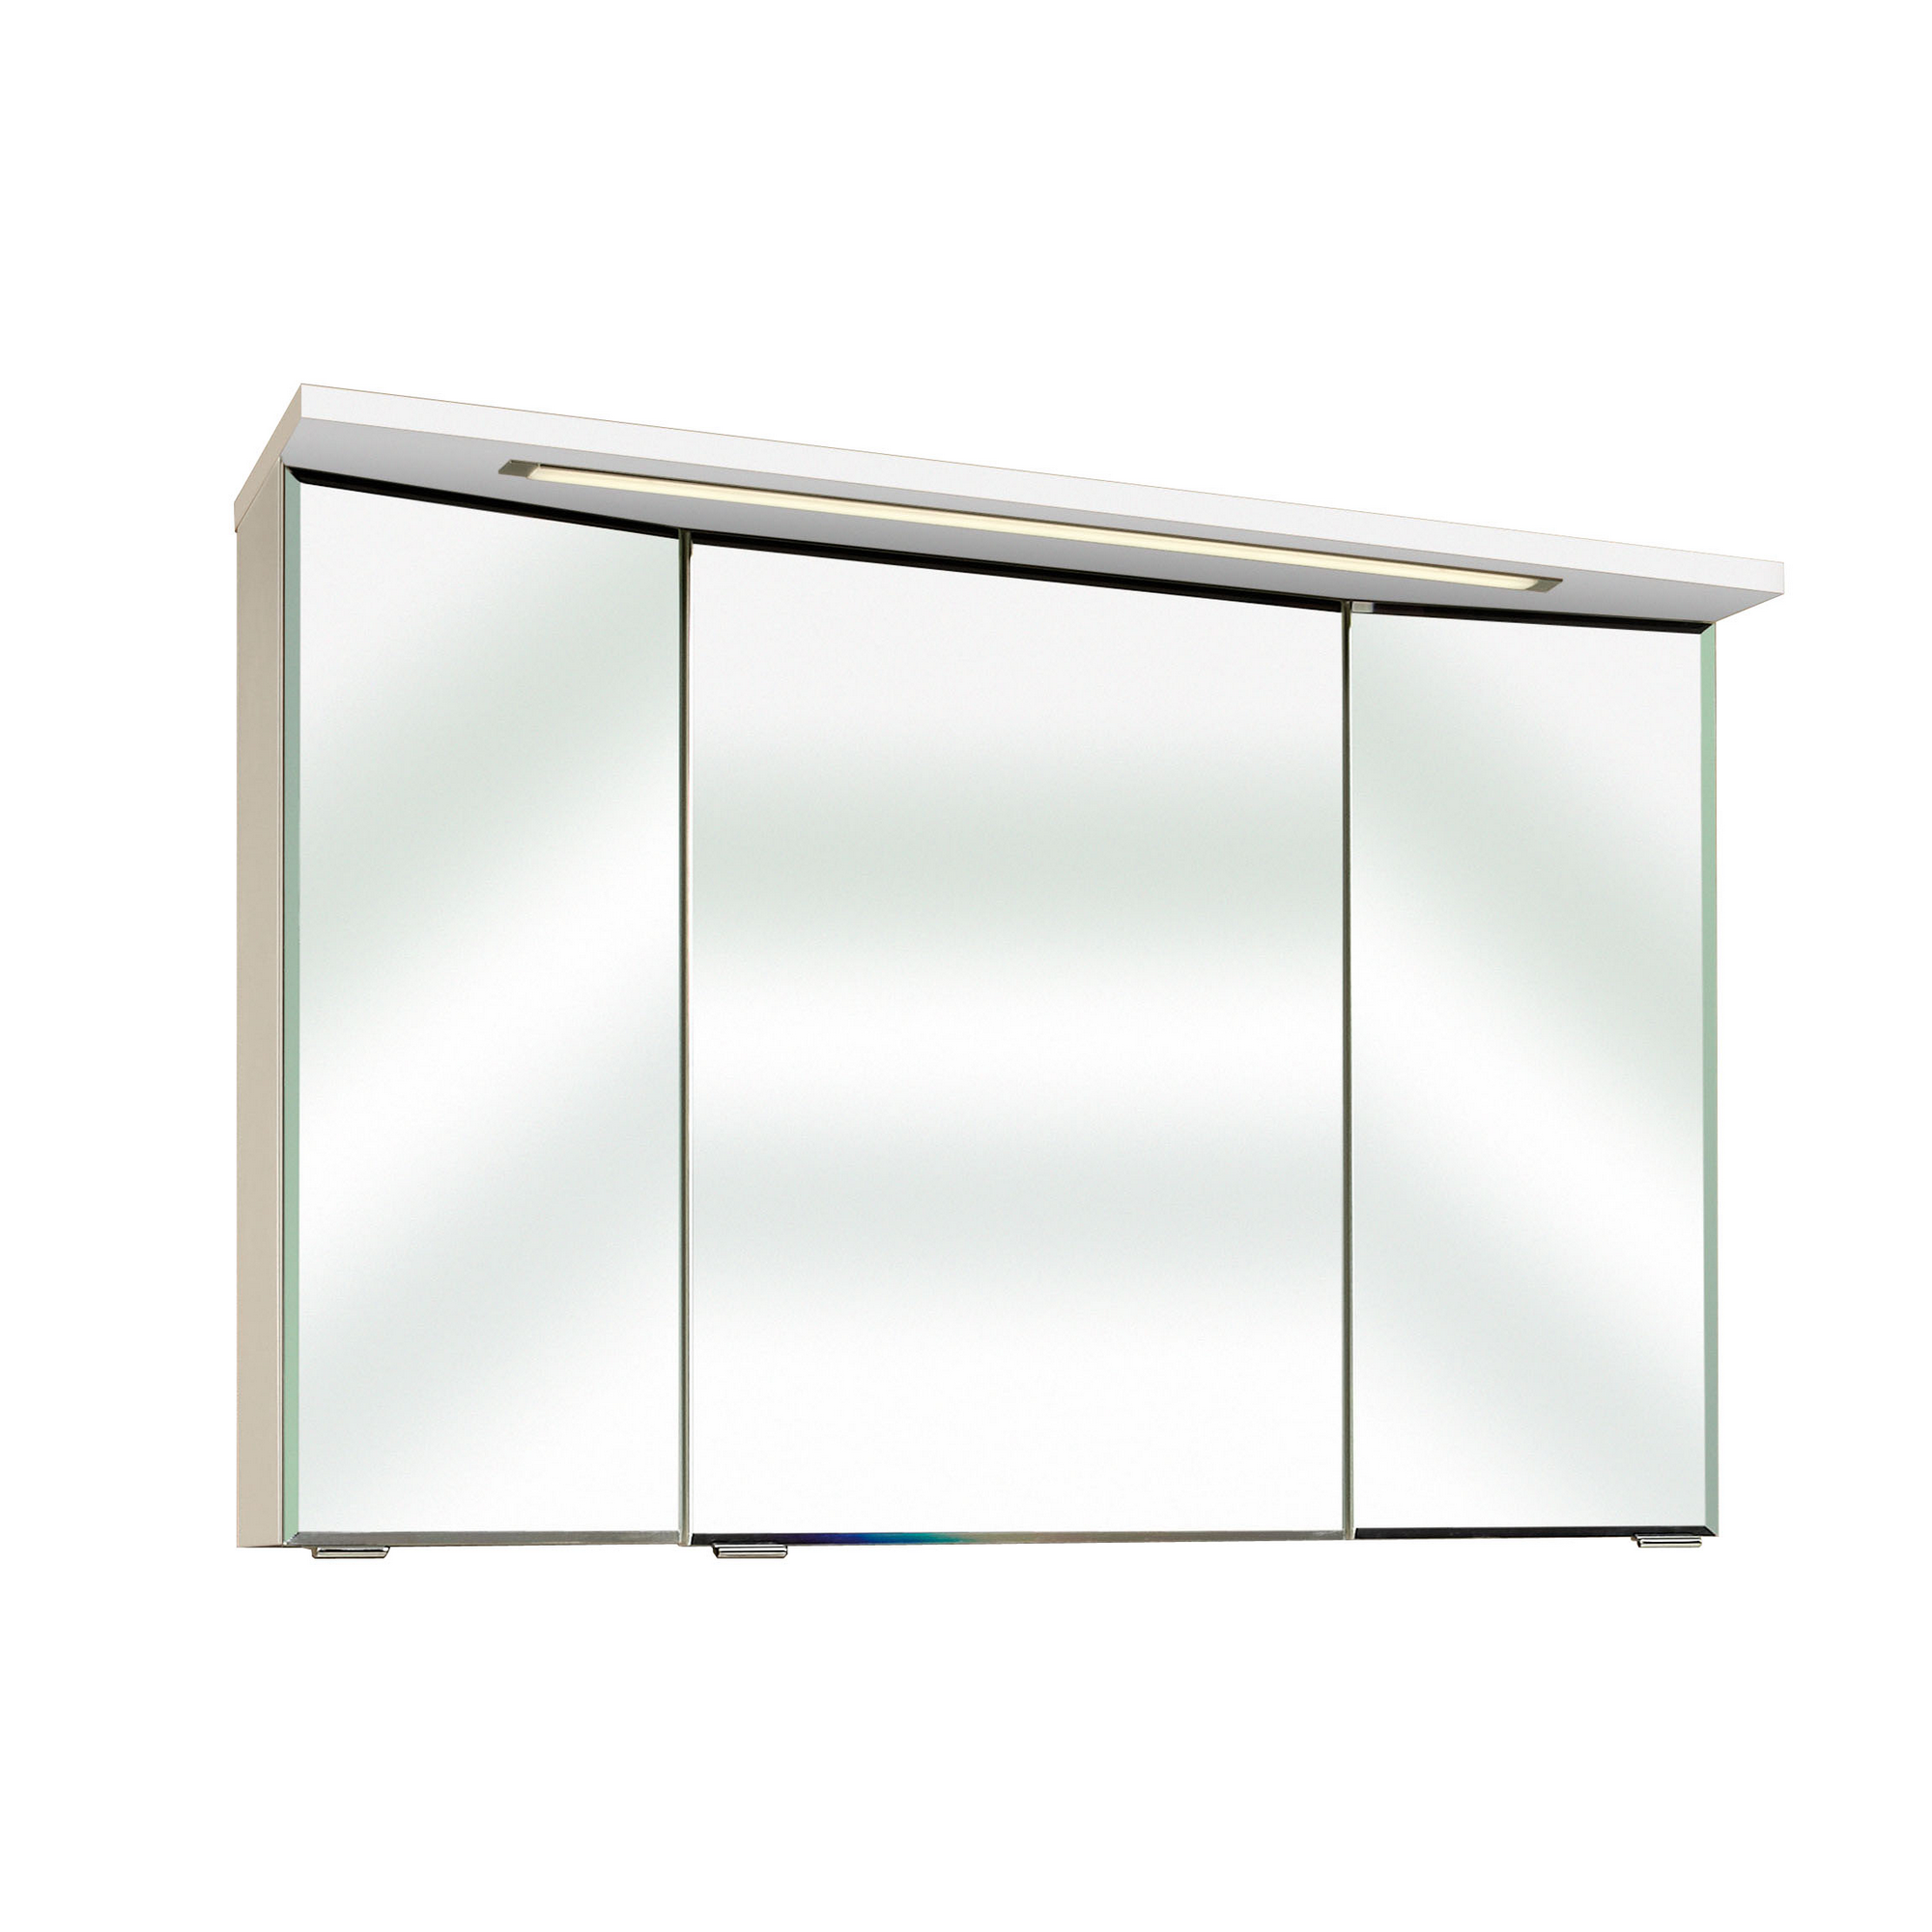 Spiegelschrank 'Primo' weiß 3D 105 x 72 cm mit Kranzbodenbeleuchtung + product picture